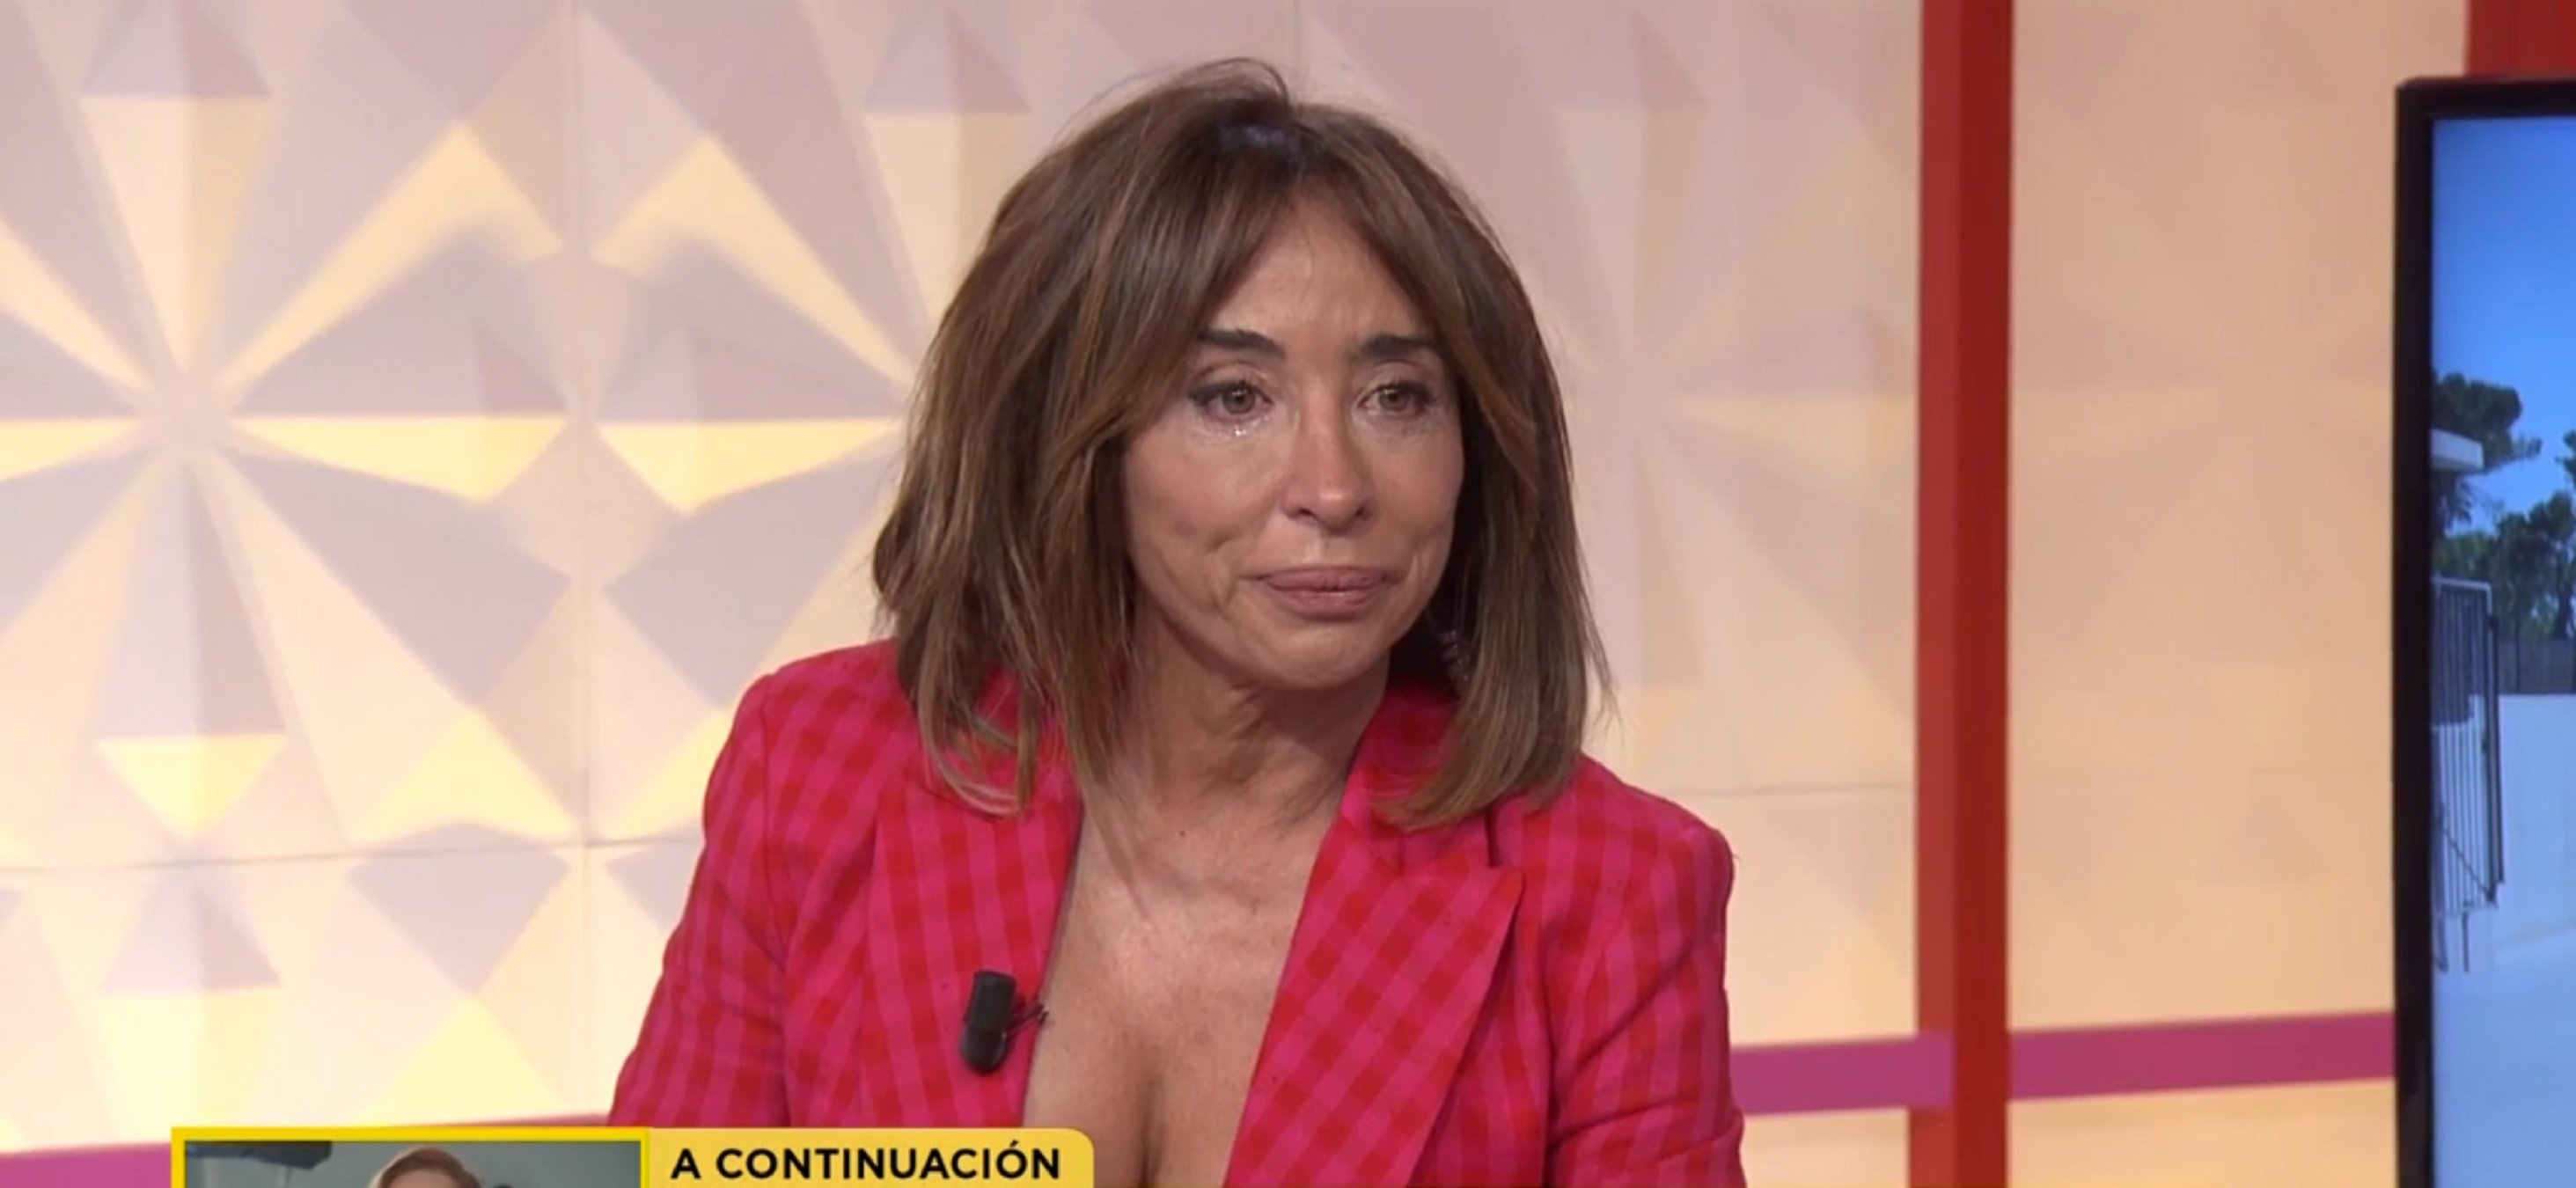 María Patiño plora desconsolada mostrant el vídeo mai vist de Rocío Carrasco